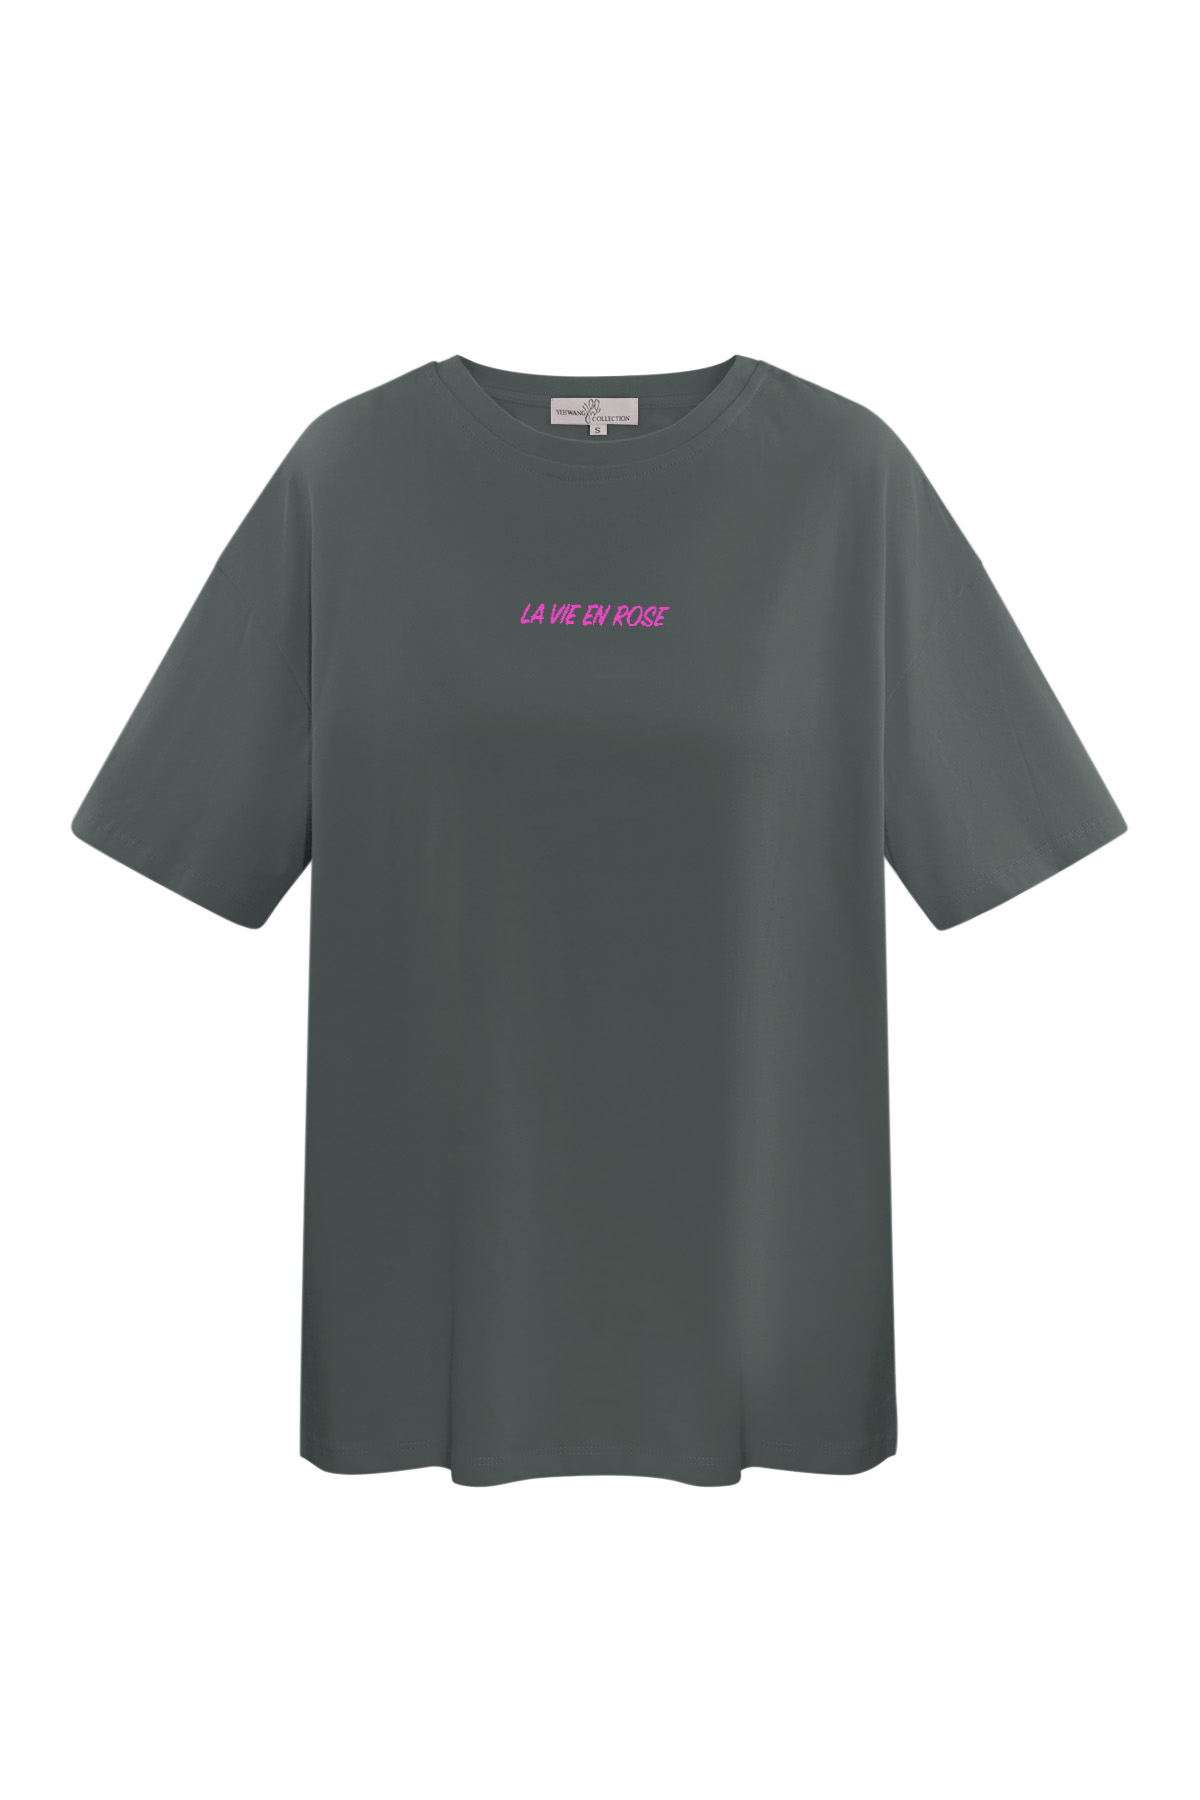 T-shirt la vie en rose - grigio scuro